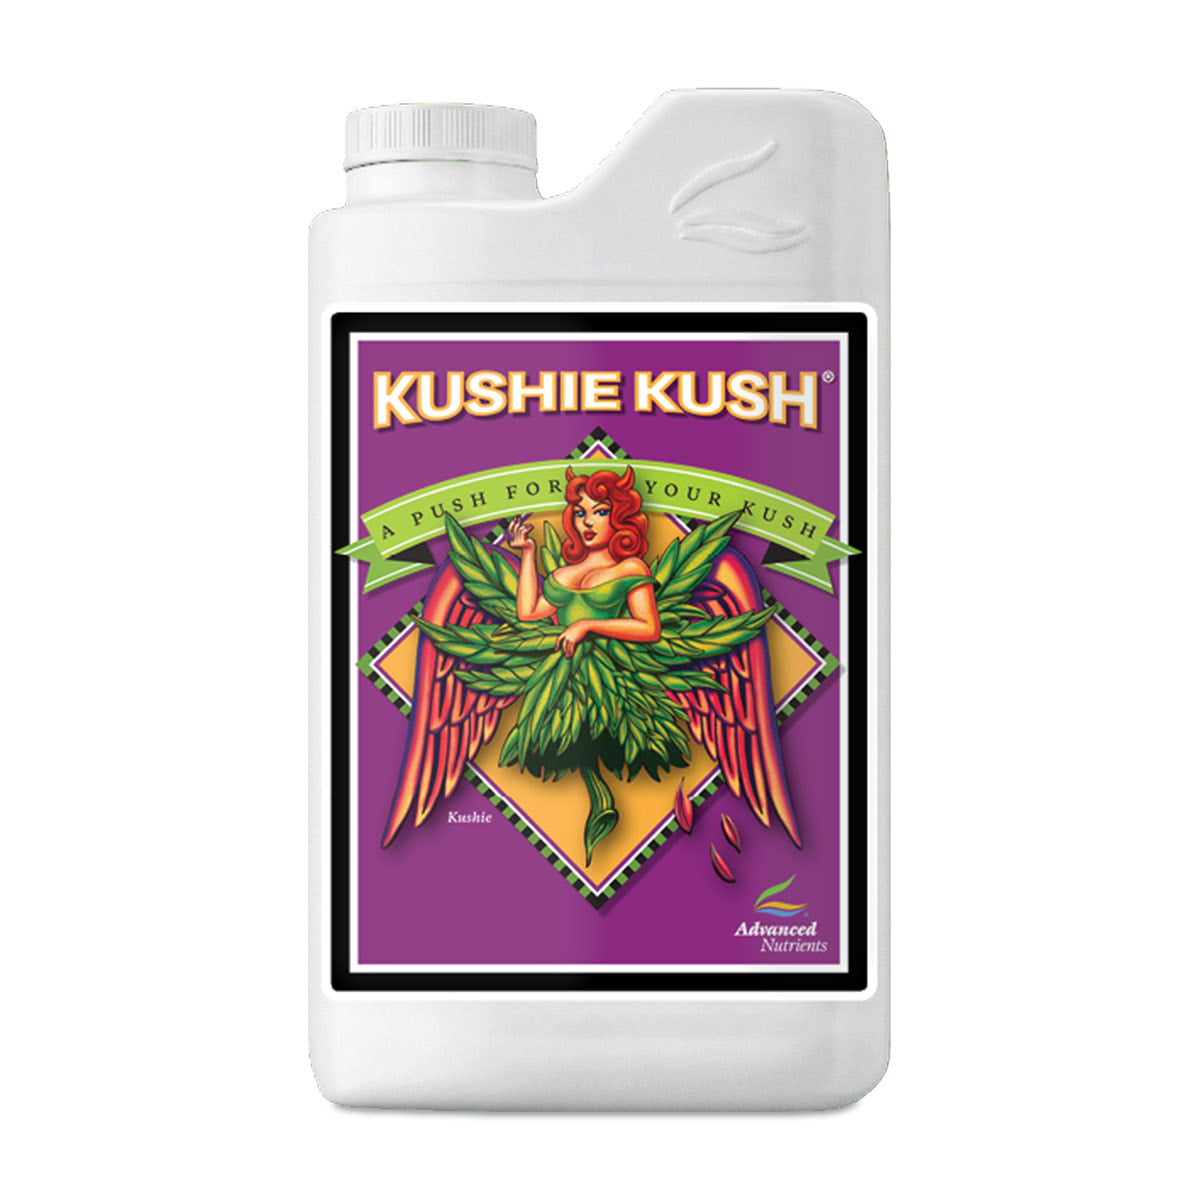 高级营养品 Kushie Kush 